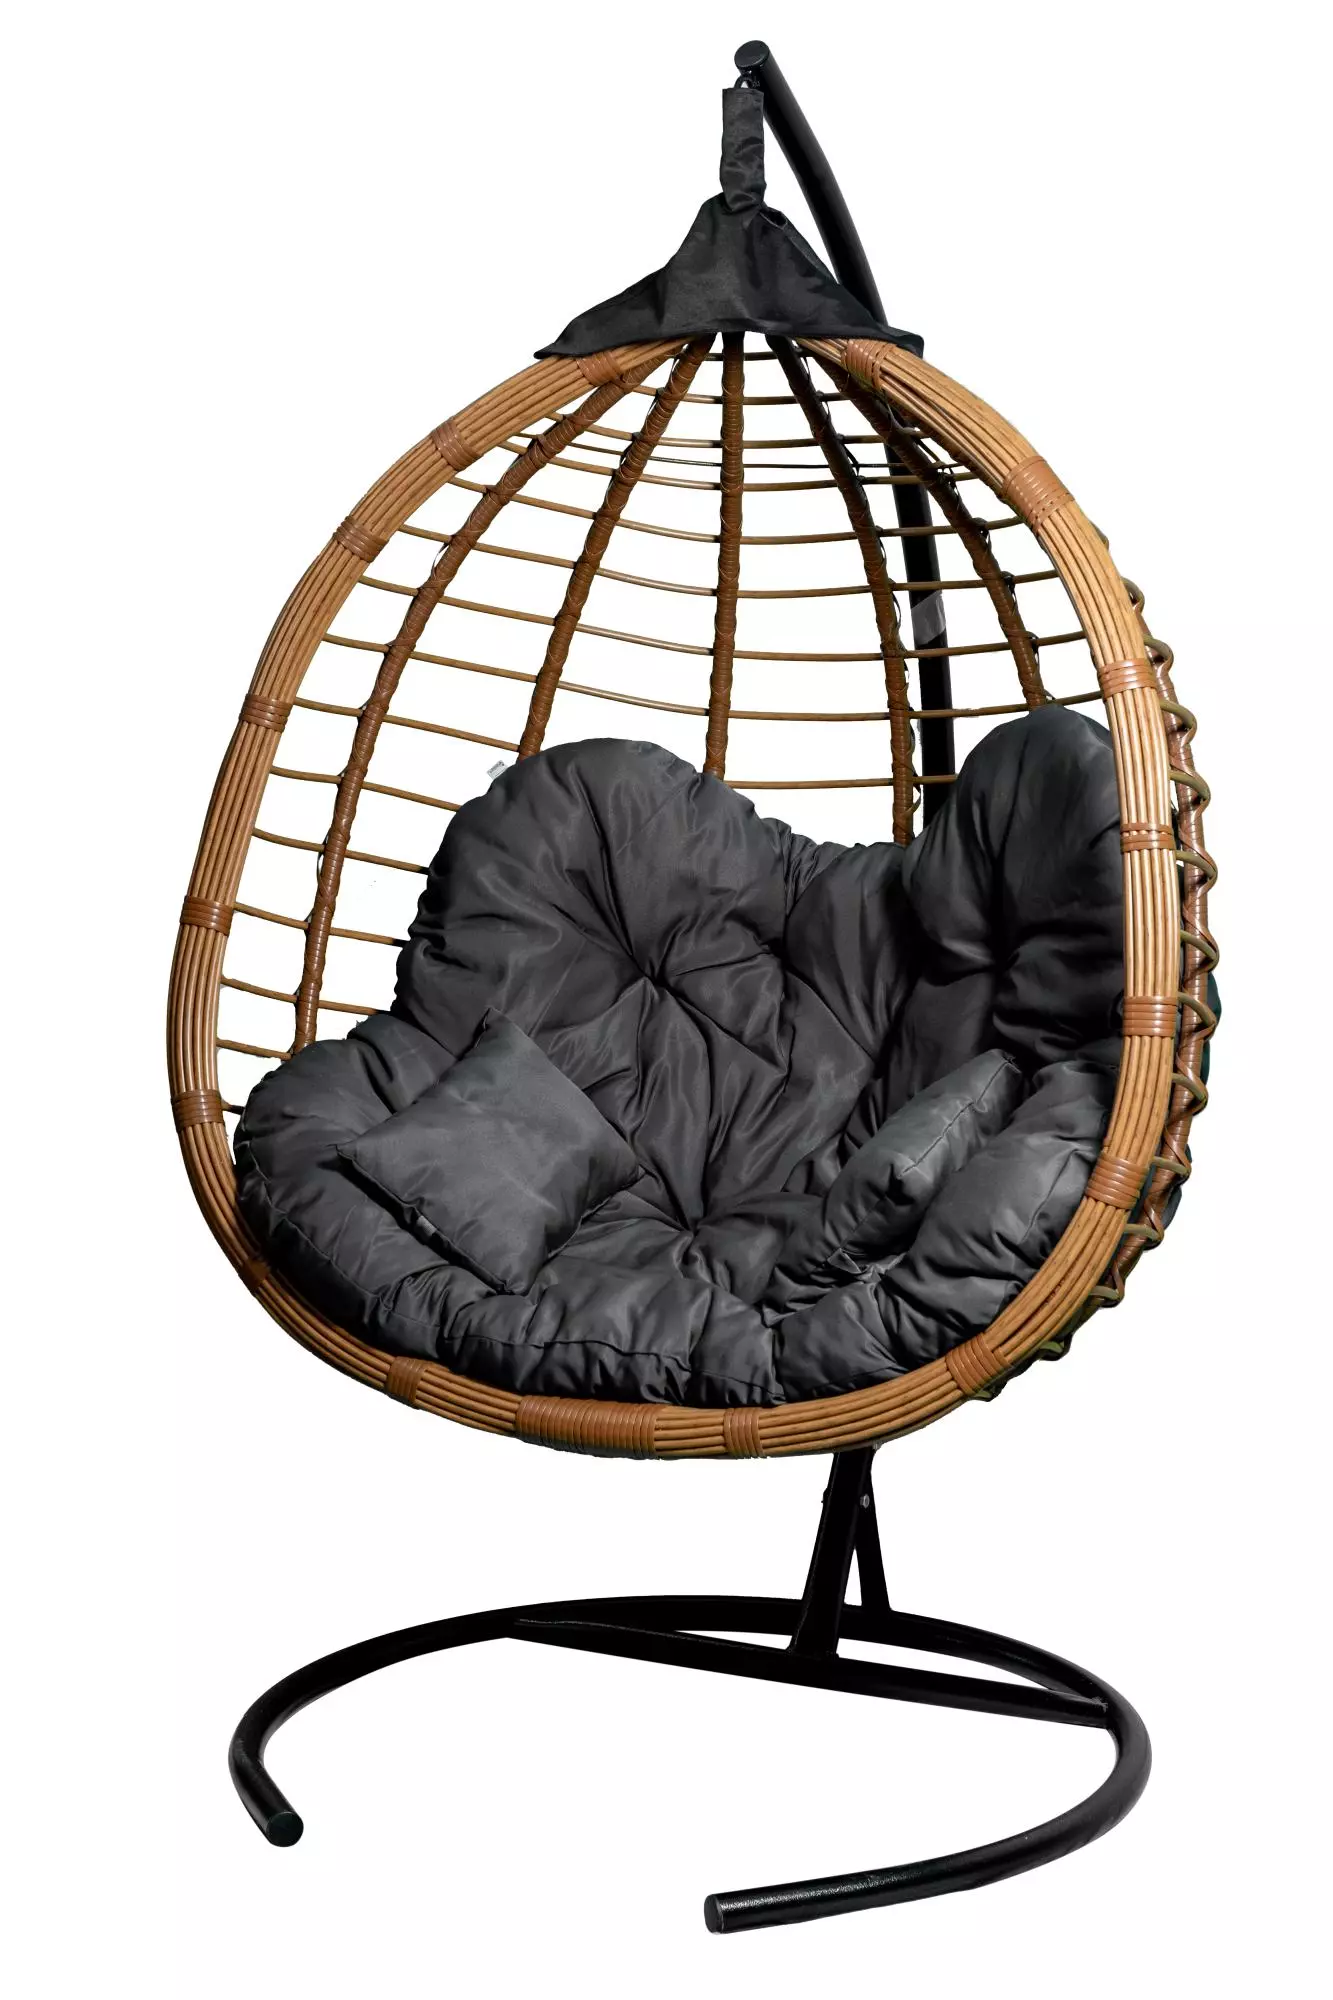 Кресло подвесное двойное Ортис CN900-МТ цв.корзины беж, цв. подушки серый Garden story